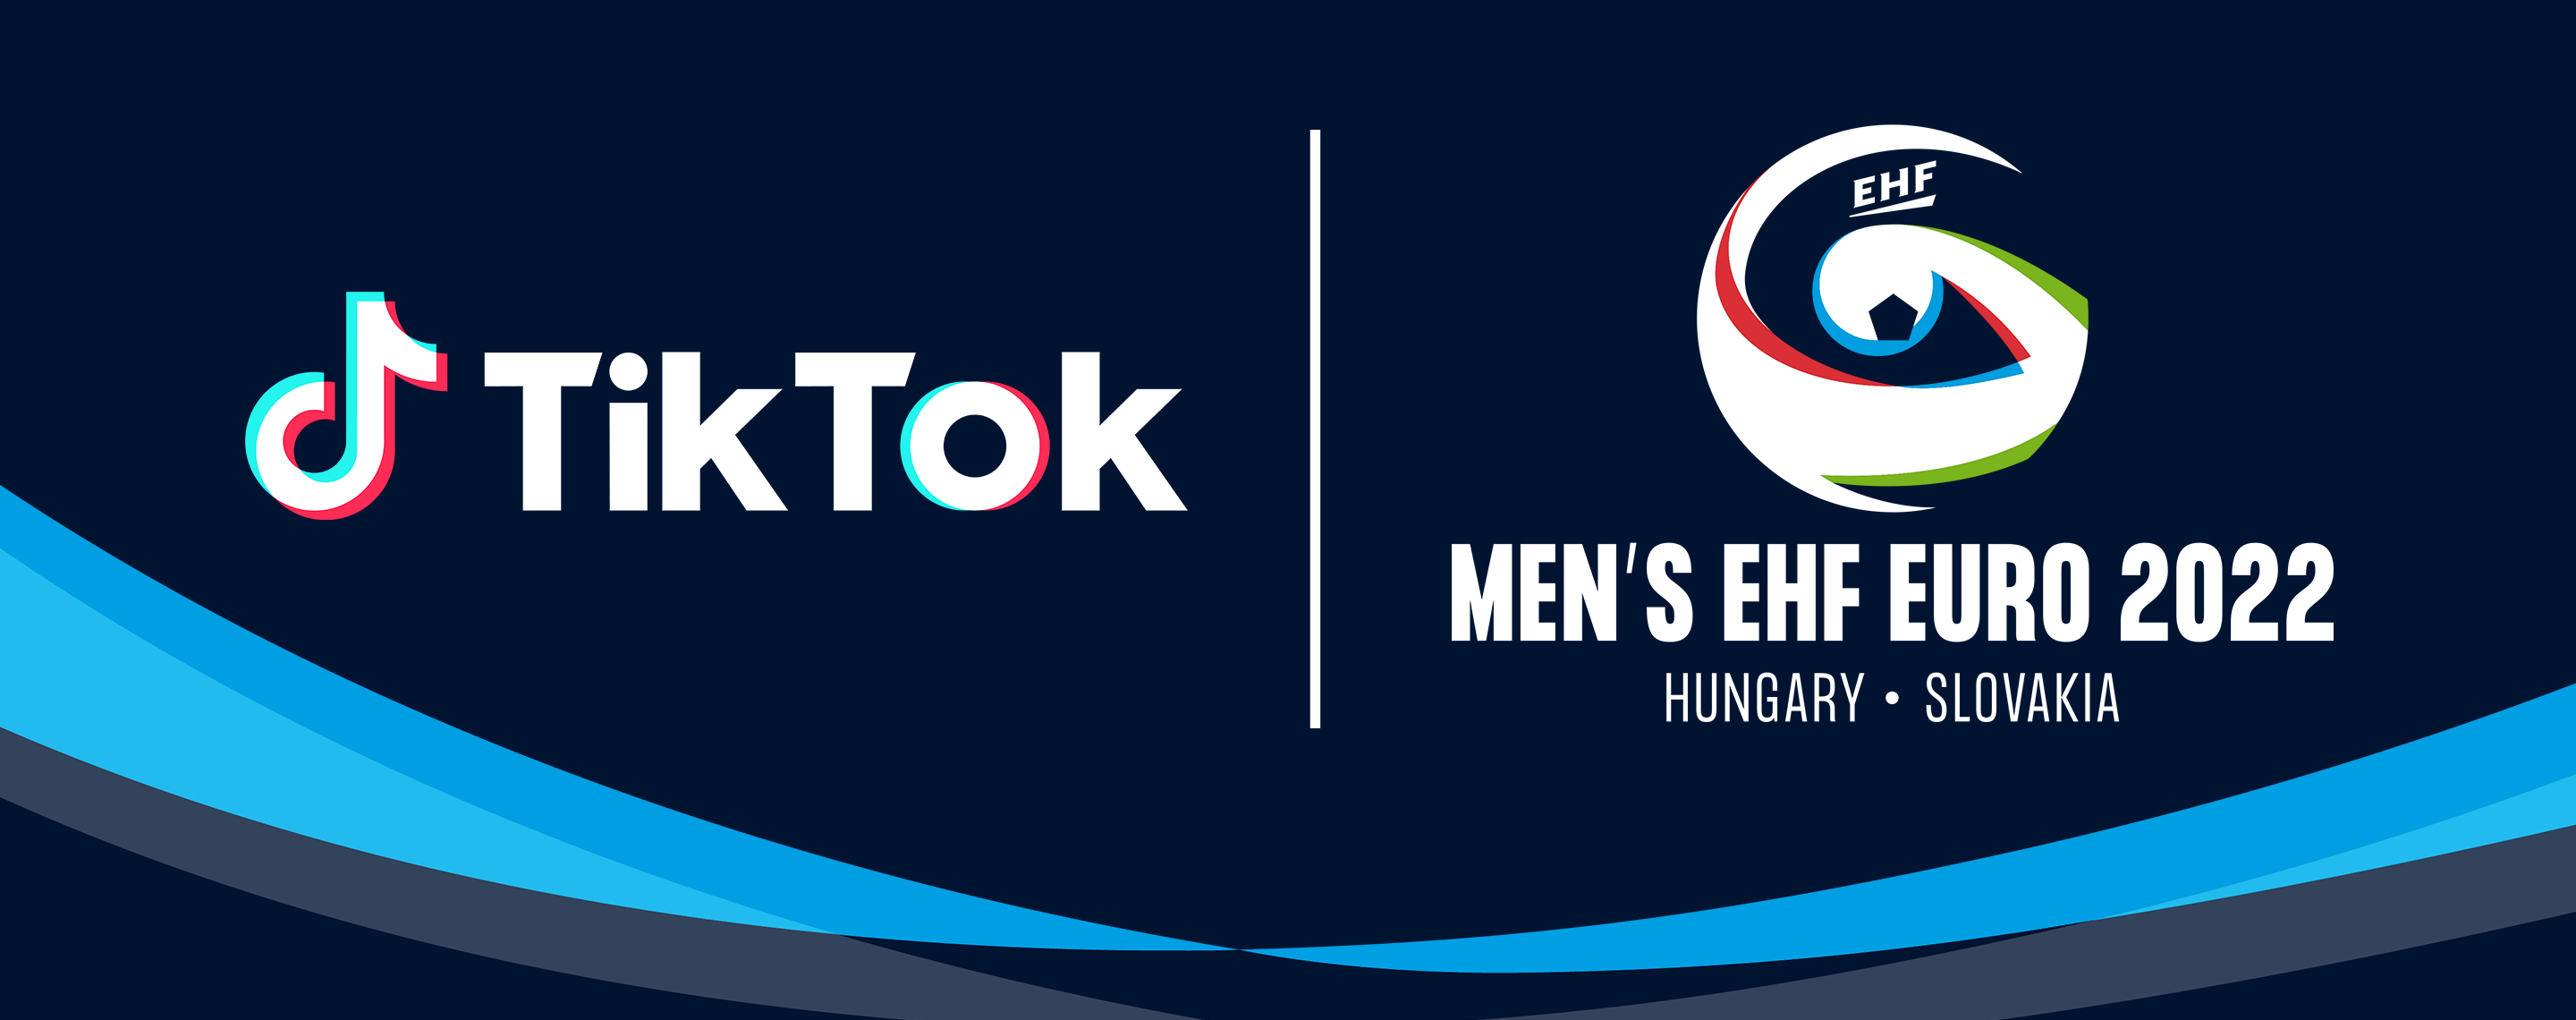 TikTok becomes EHF partner at EHF EURO 2022